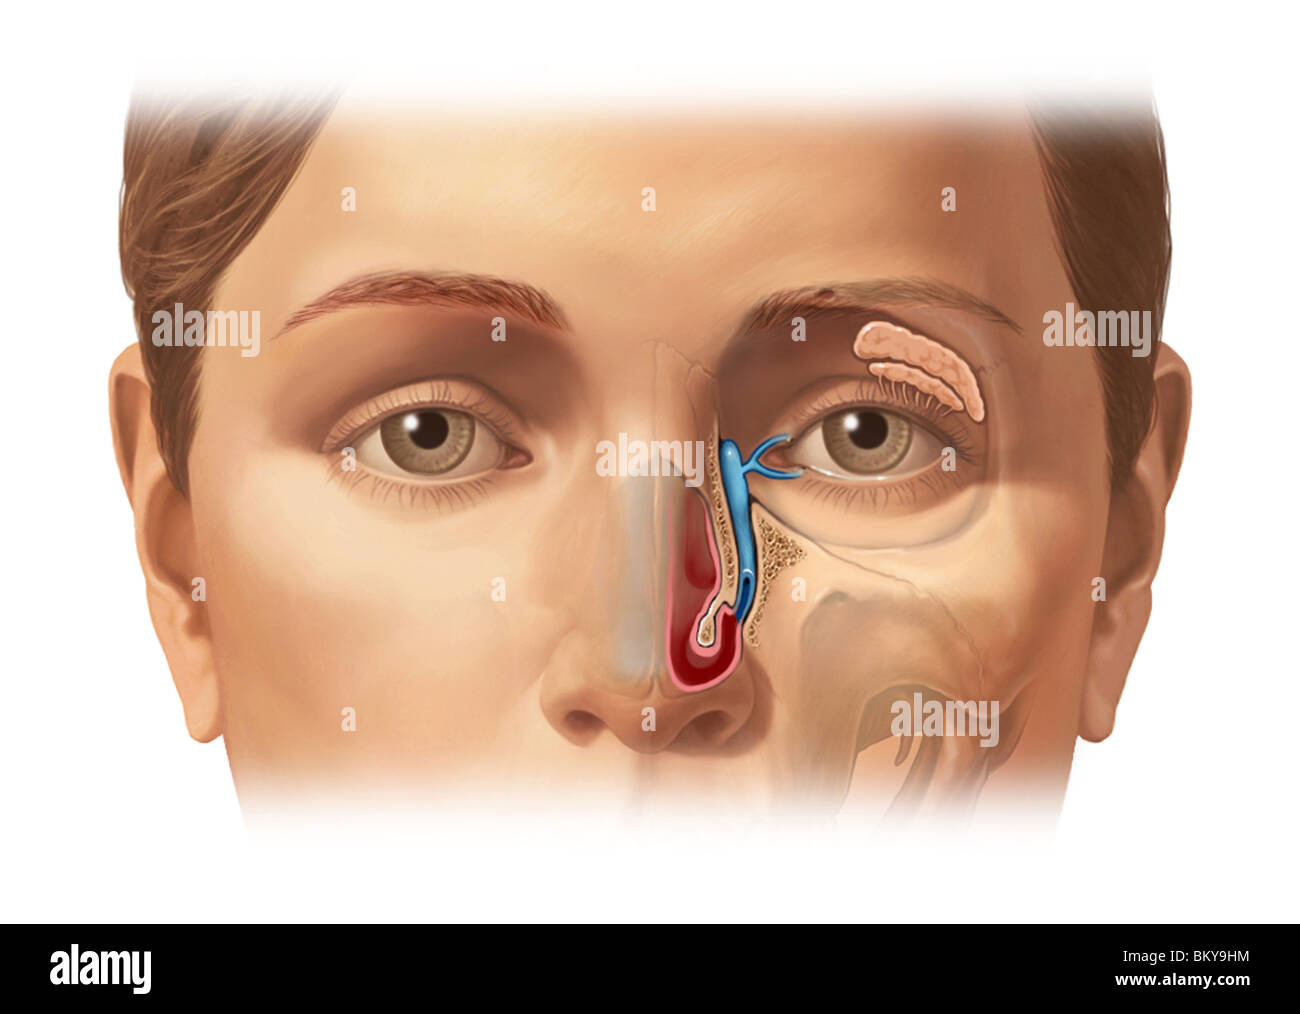 Esta imagen detalla el aparato lagrimal que produce lágrimas y drena desde el ojo. Foto de stock